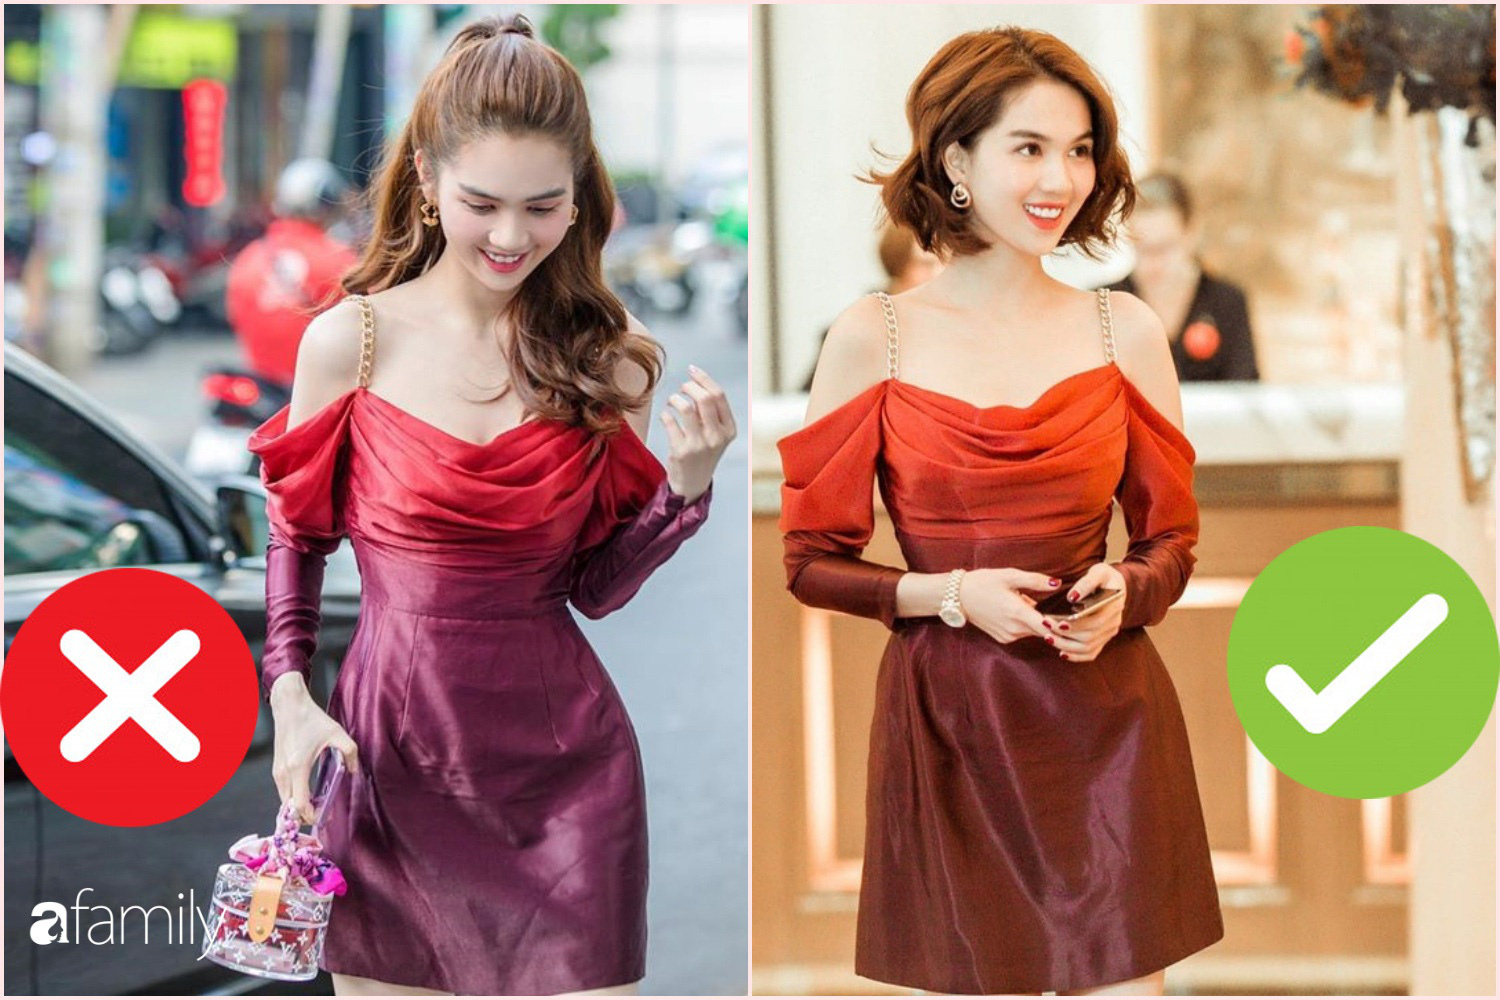 Nhìn sự cách biệt váy hiệu – váy chợ của Ngọc Trinh mới thấy photoshop có tác dụng thần kỳ thế nào - Ảnh 1.